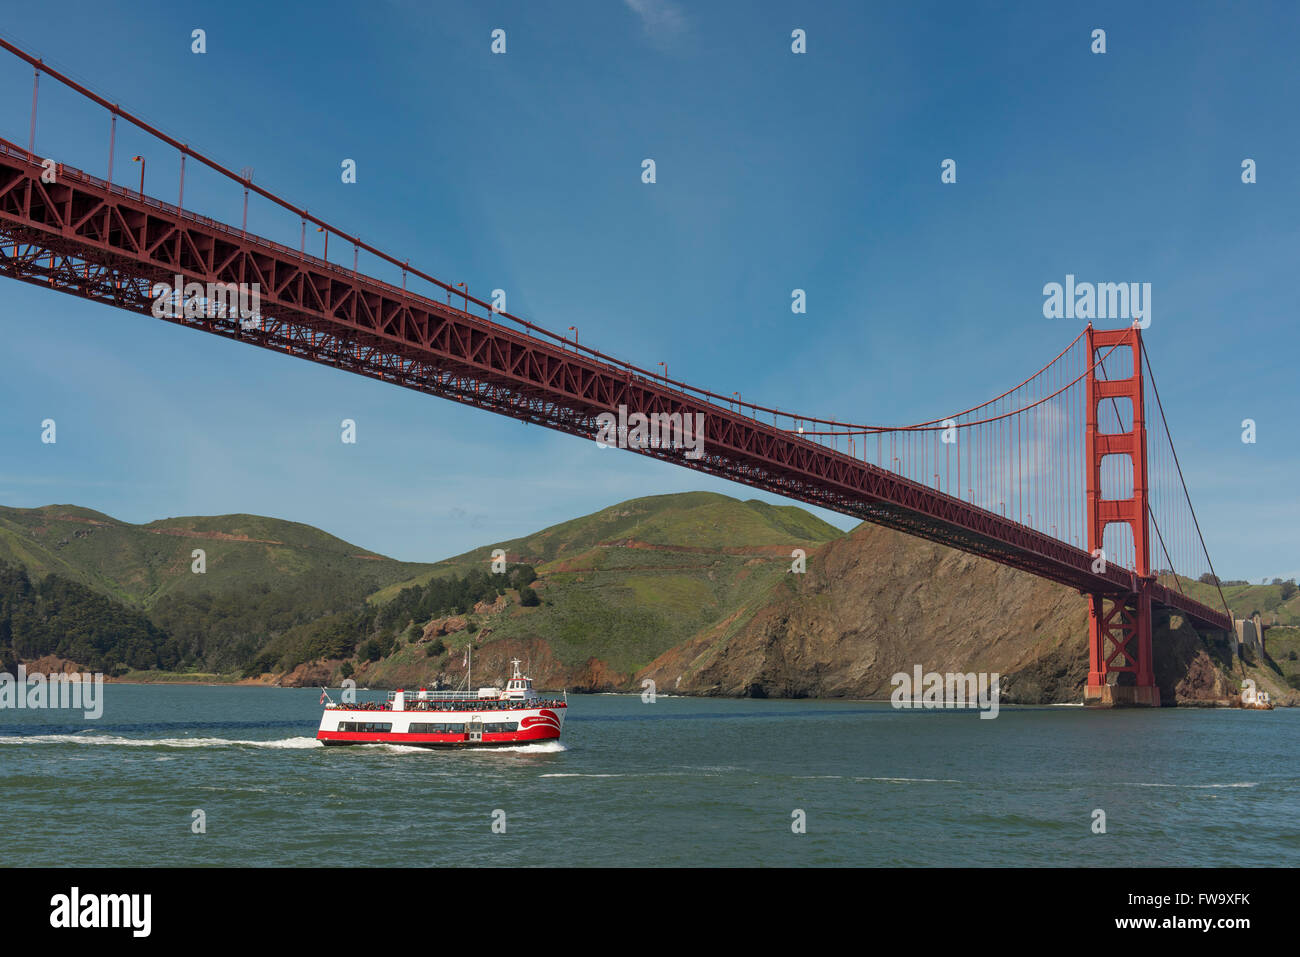 El Puente Golden Gate con paseos en barco pasando por debajo, cerca de San Francisco, California, EE.UU. Foto de stock